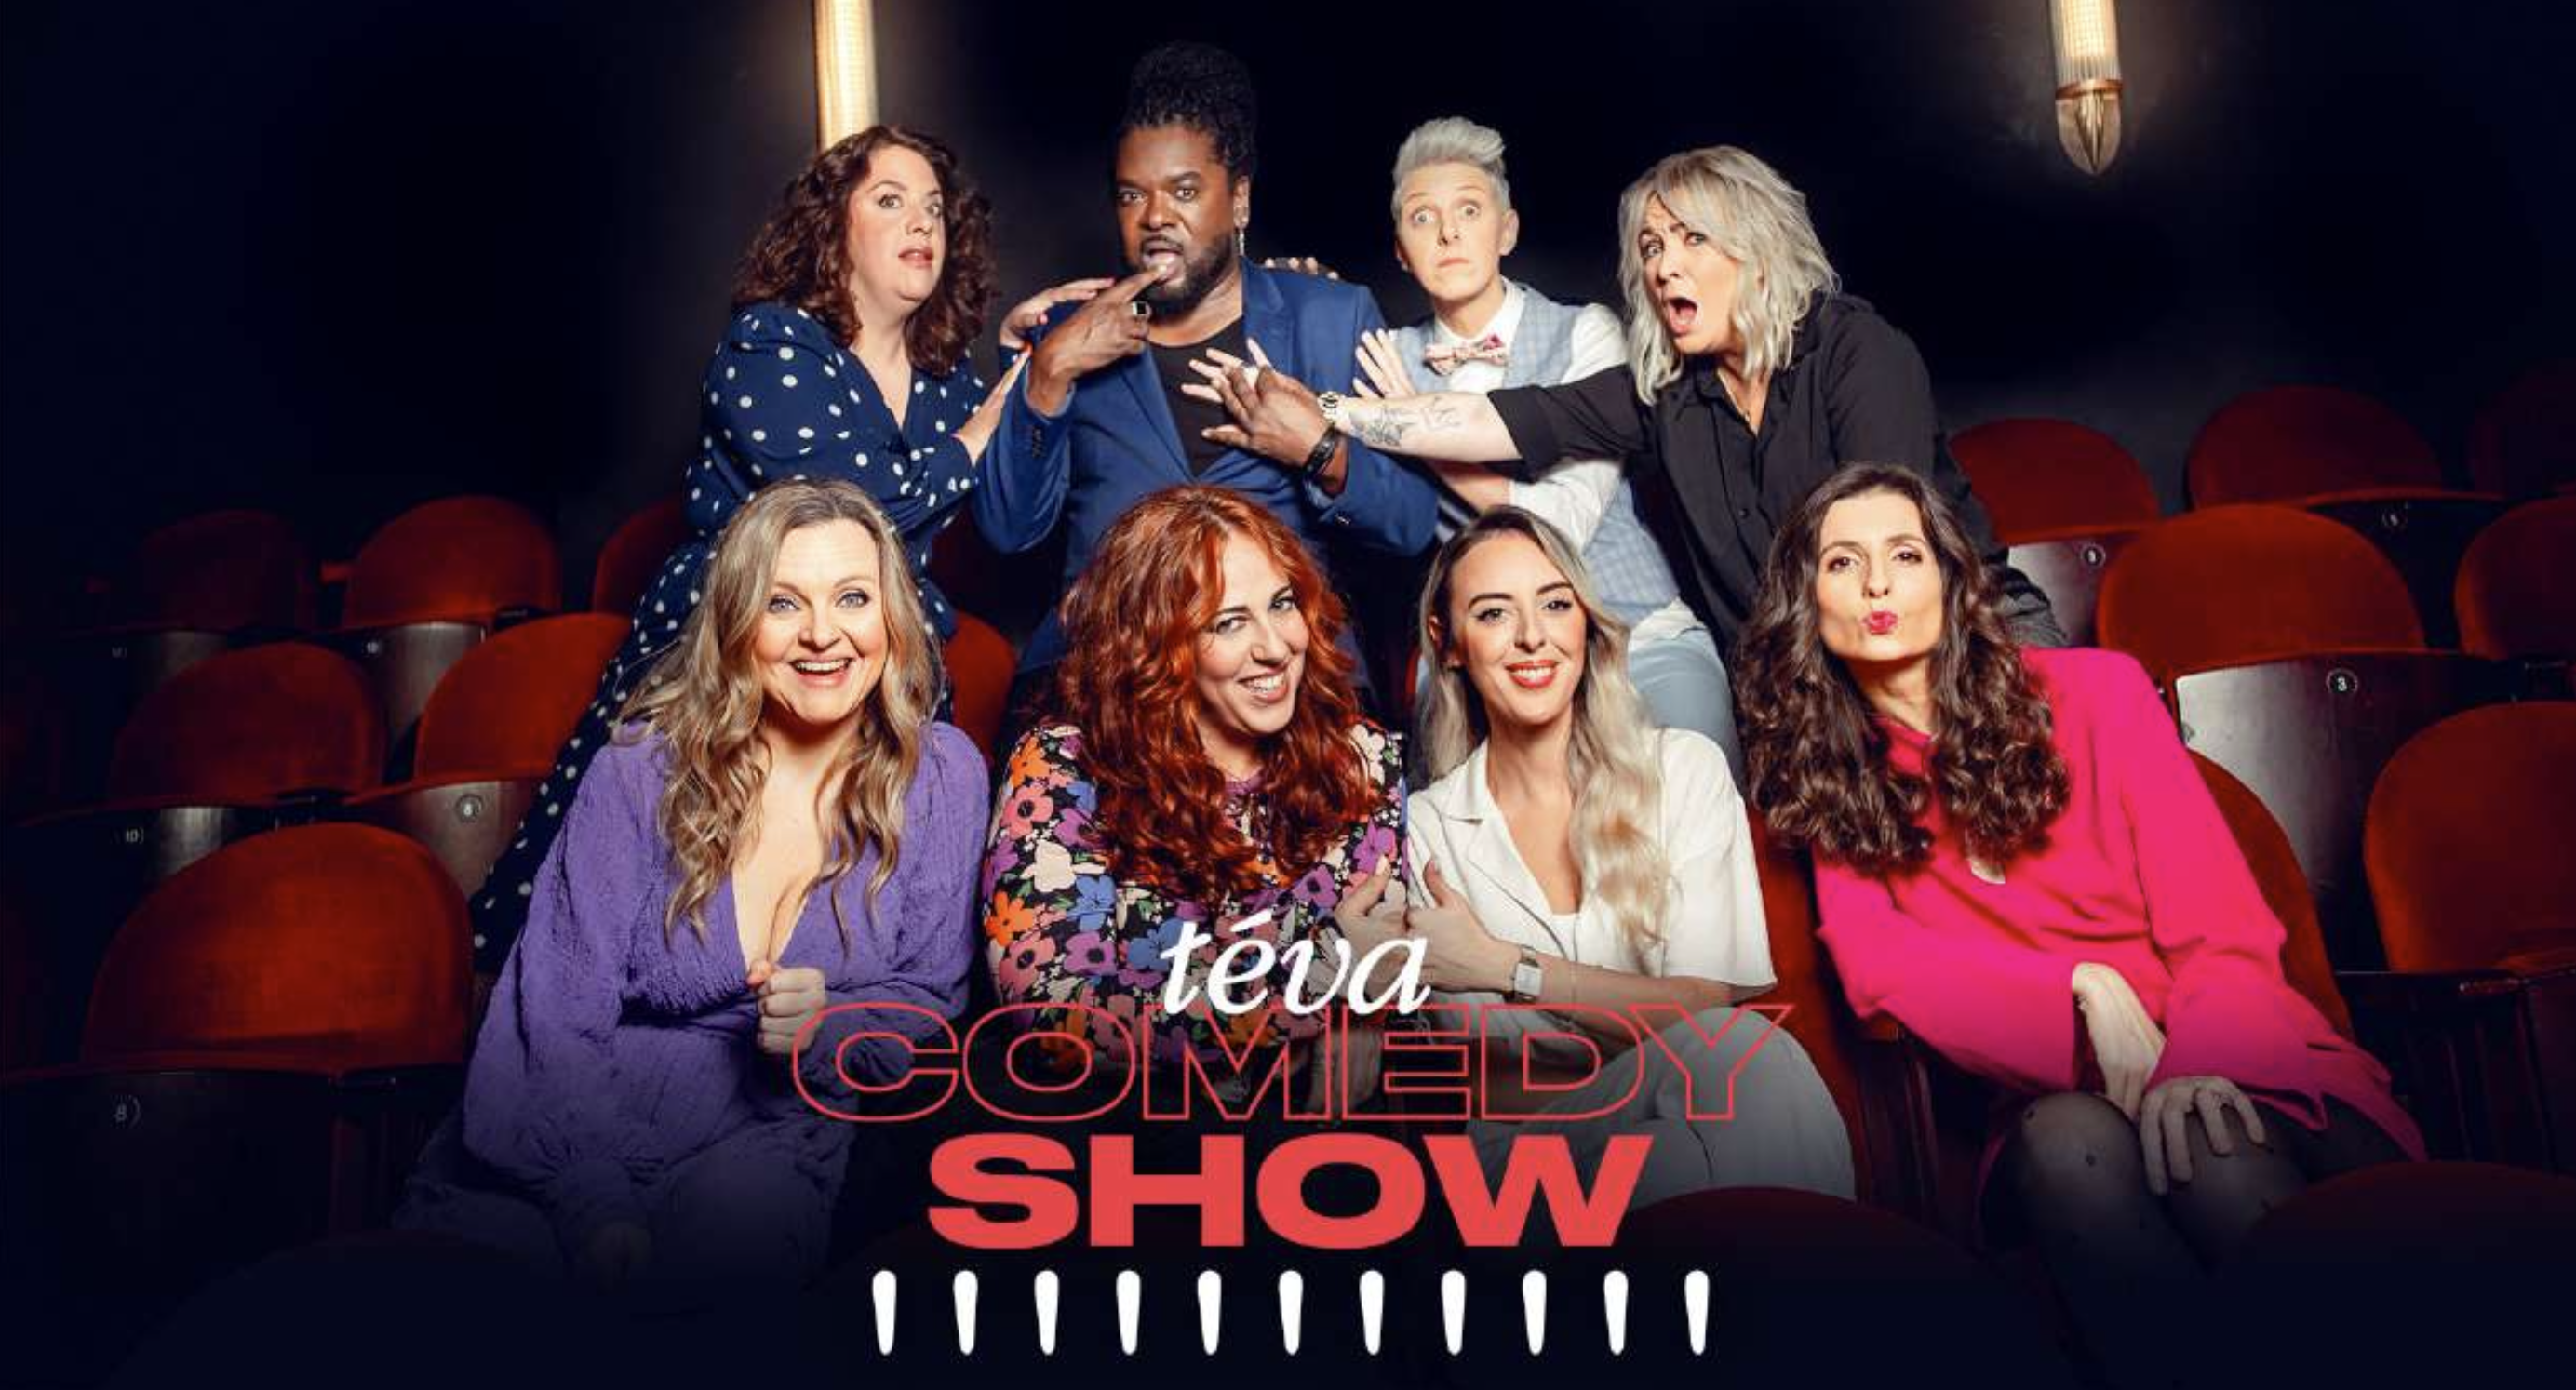 Un nouveau "Téva Comedy Show", présenté par Anthony Kavanagh le 22 avril sur Téva